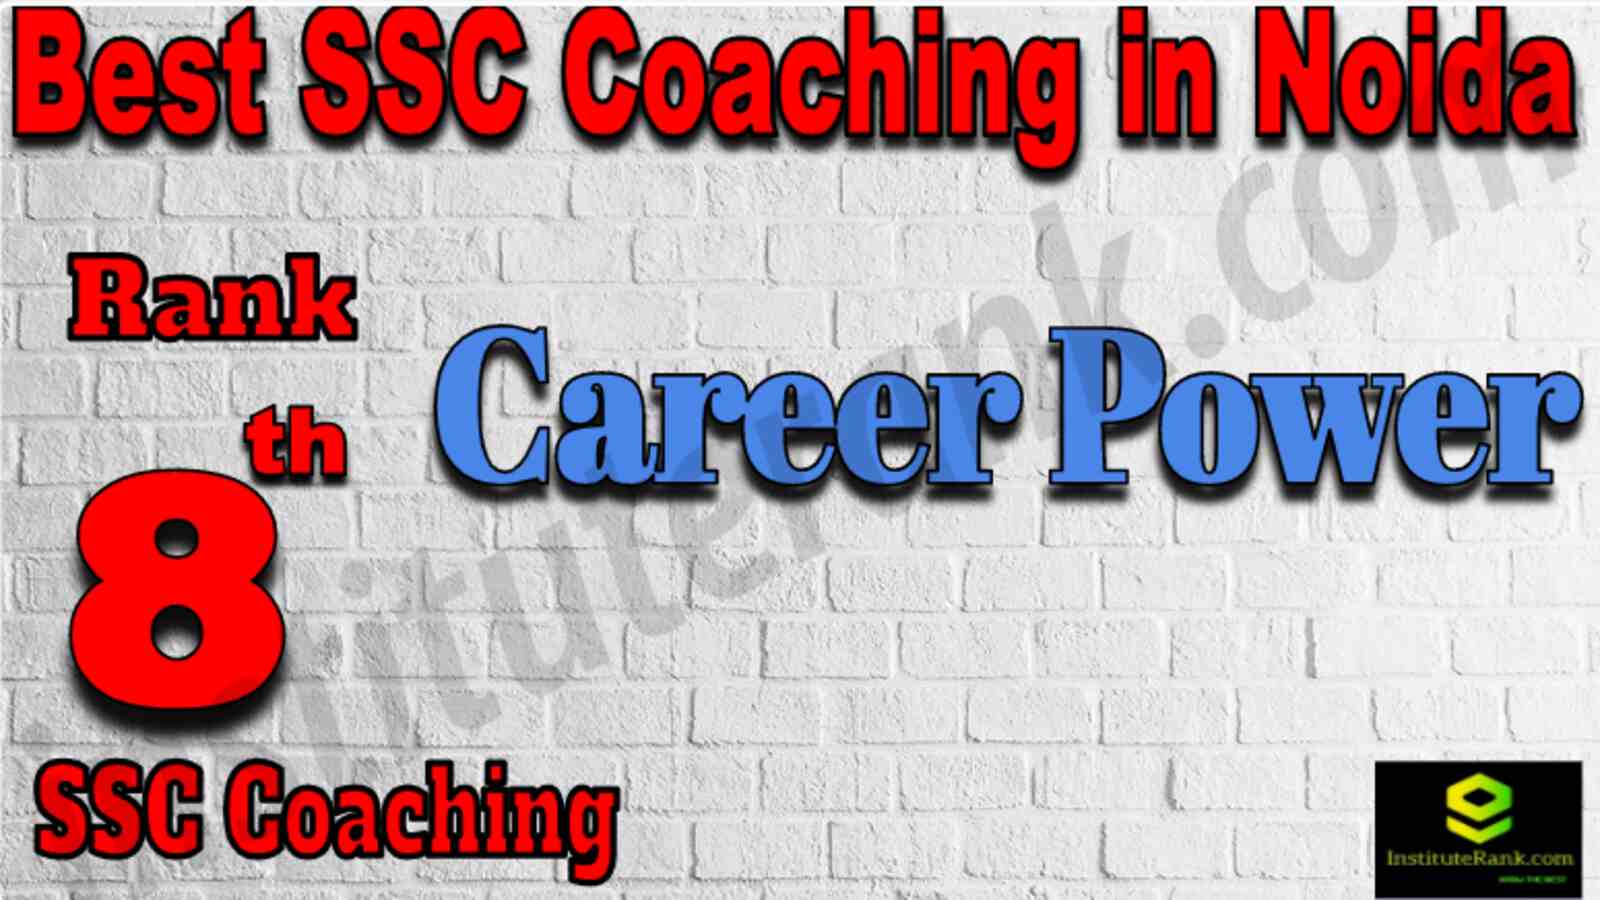 Rank 8 Best SSC Coaching in Noida 